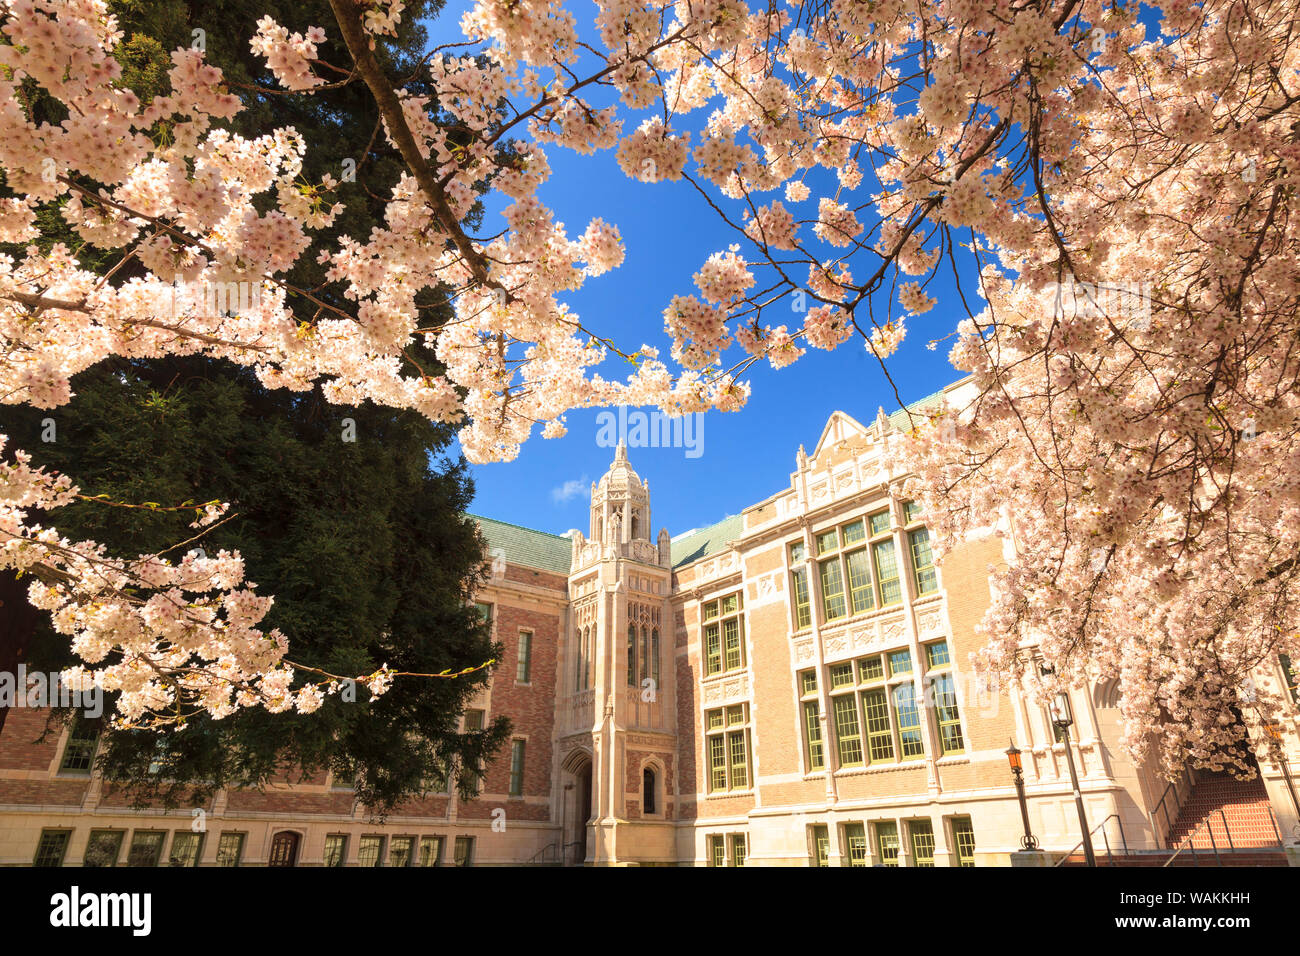 Les fleurs de cerisier en pleine floraison, printemps, campus de l'Université de Washington, Seattle, Washington State, USA (usage éditorial uniquement) Banque D'Images